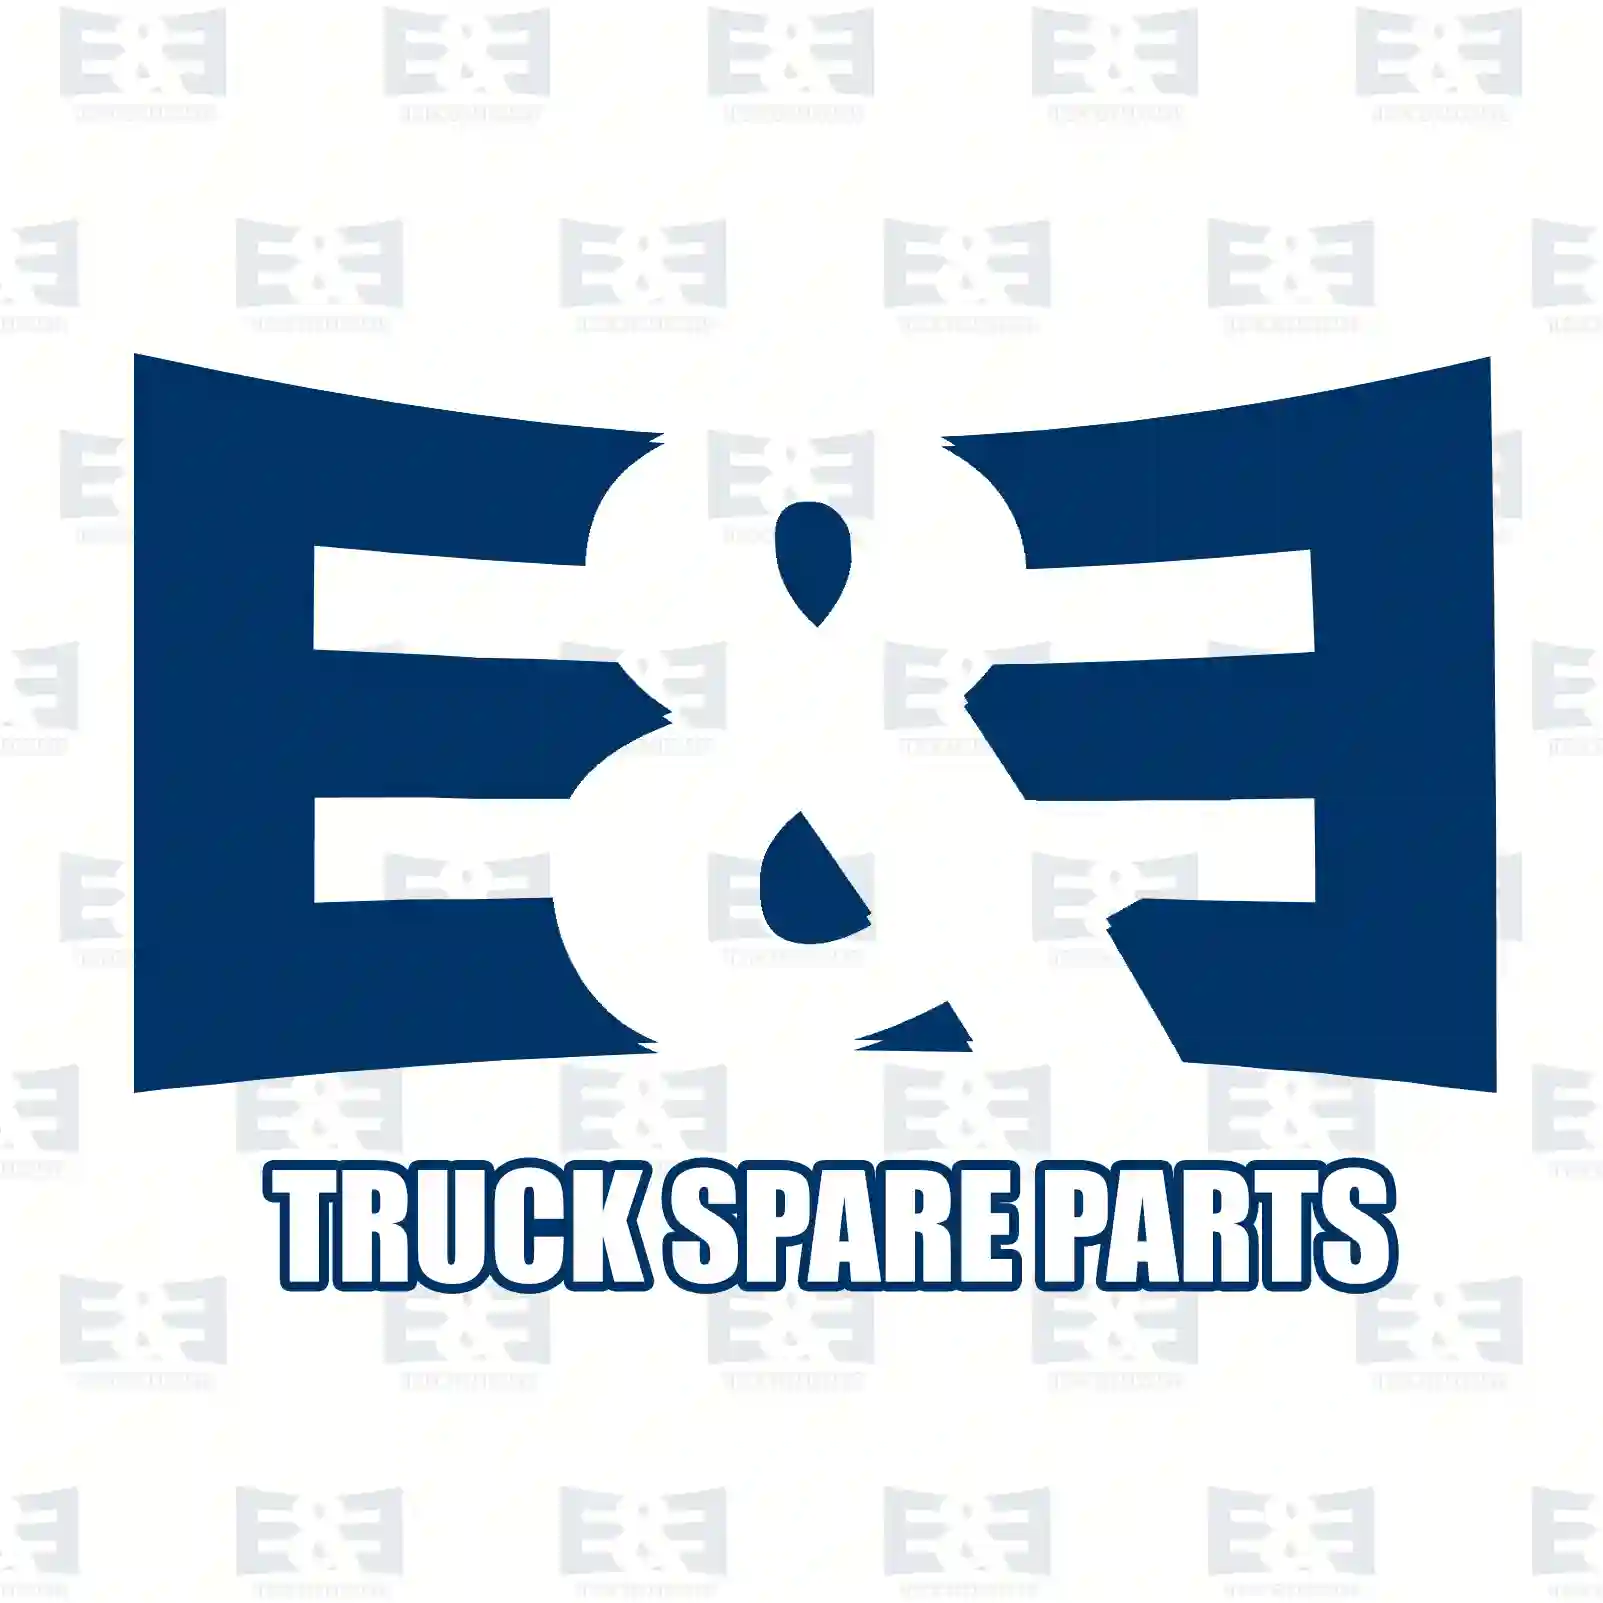 Differential kit, 2E2279676, #YOK ||  2E2279676 E&E Truck Spare Parts | Truck Spare Parts, Auotomotive Spare Parts Differential kit, 2E2279676, #YOK ||  2E2279676 E&E Truck Spare Parts | Truck Spare Parts, Auotomotive Spare Parts